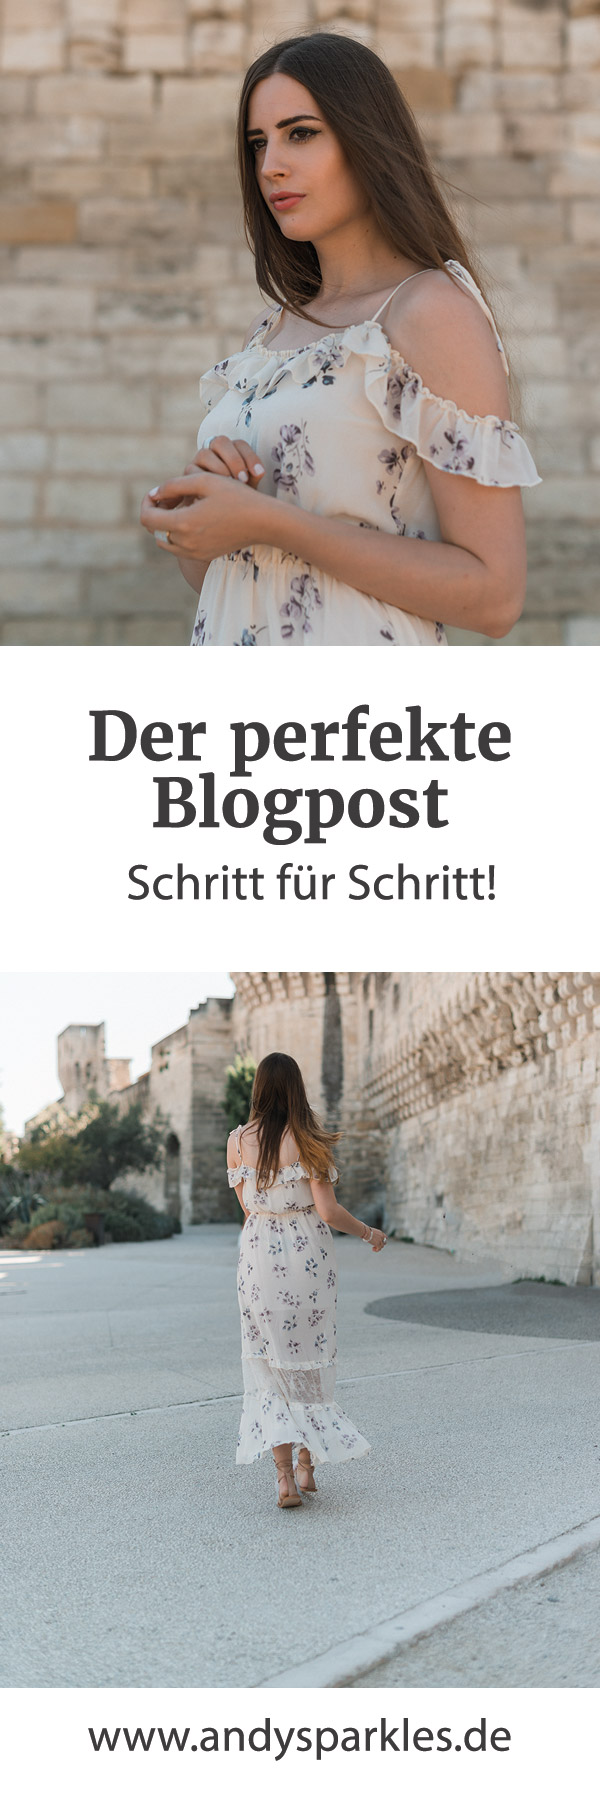 andysparkles_Der perfekte Blogpost